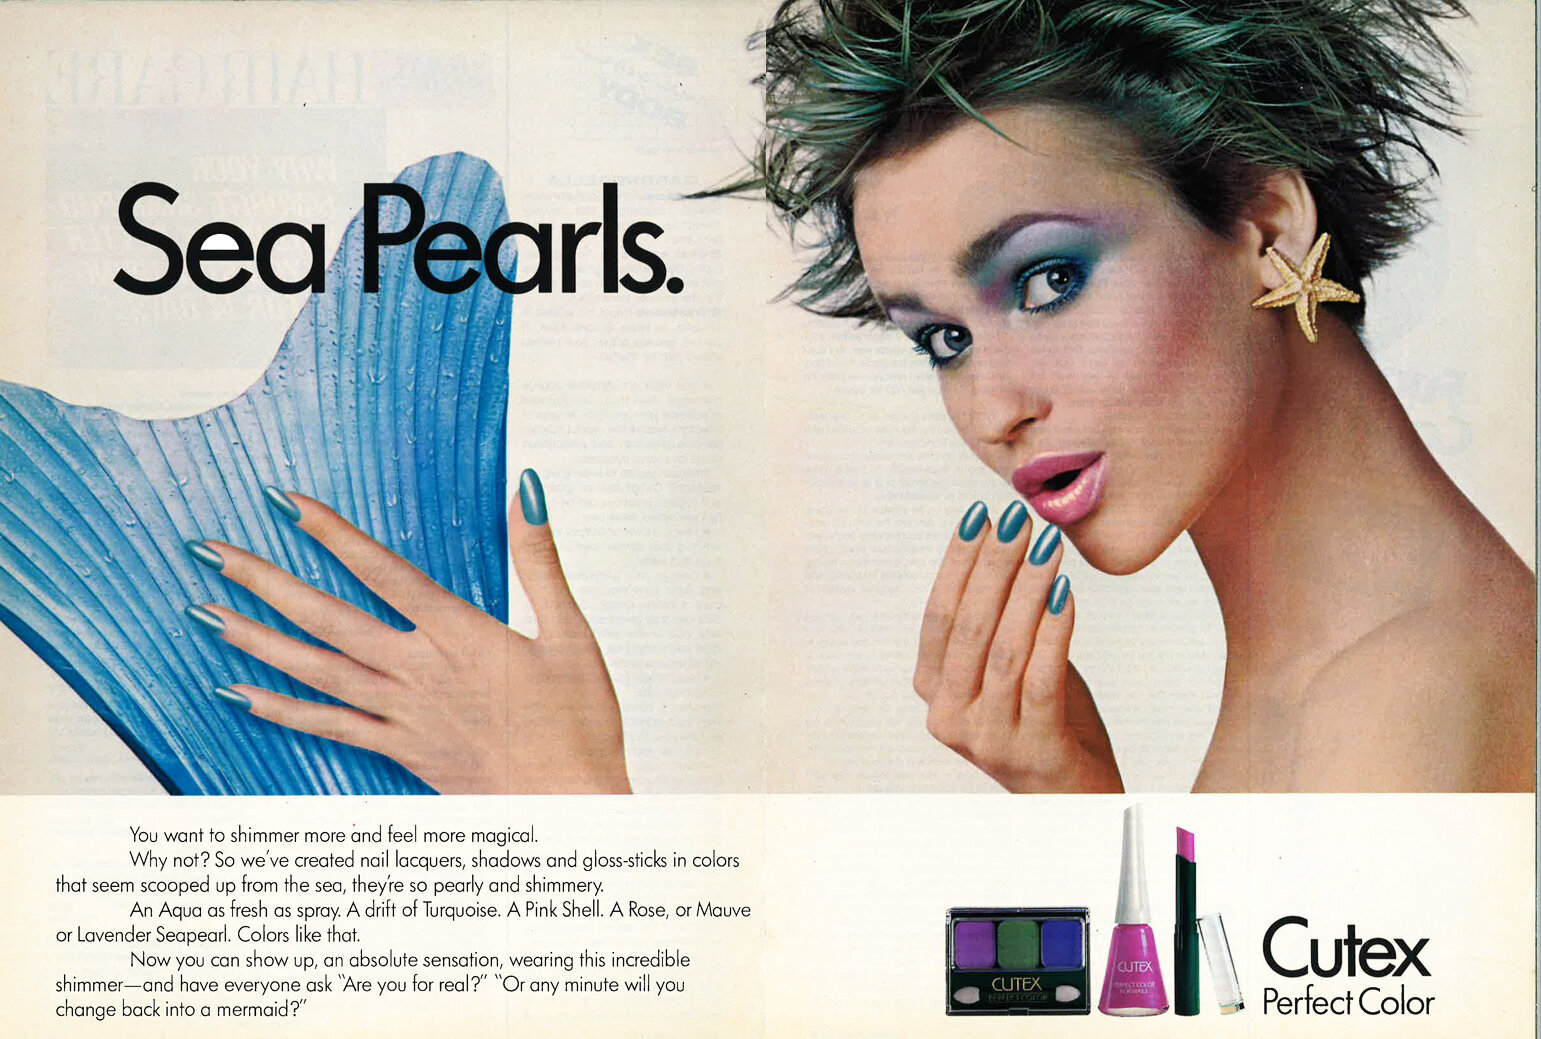   Sea Pearls Nail Polish Ad Cutex 1986  